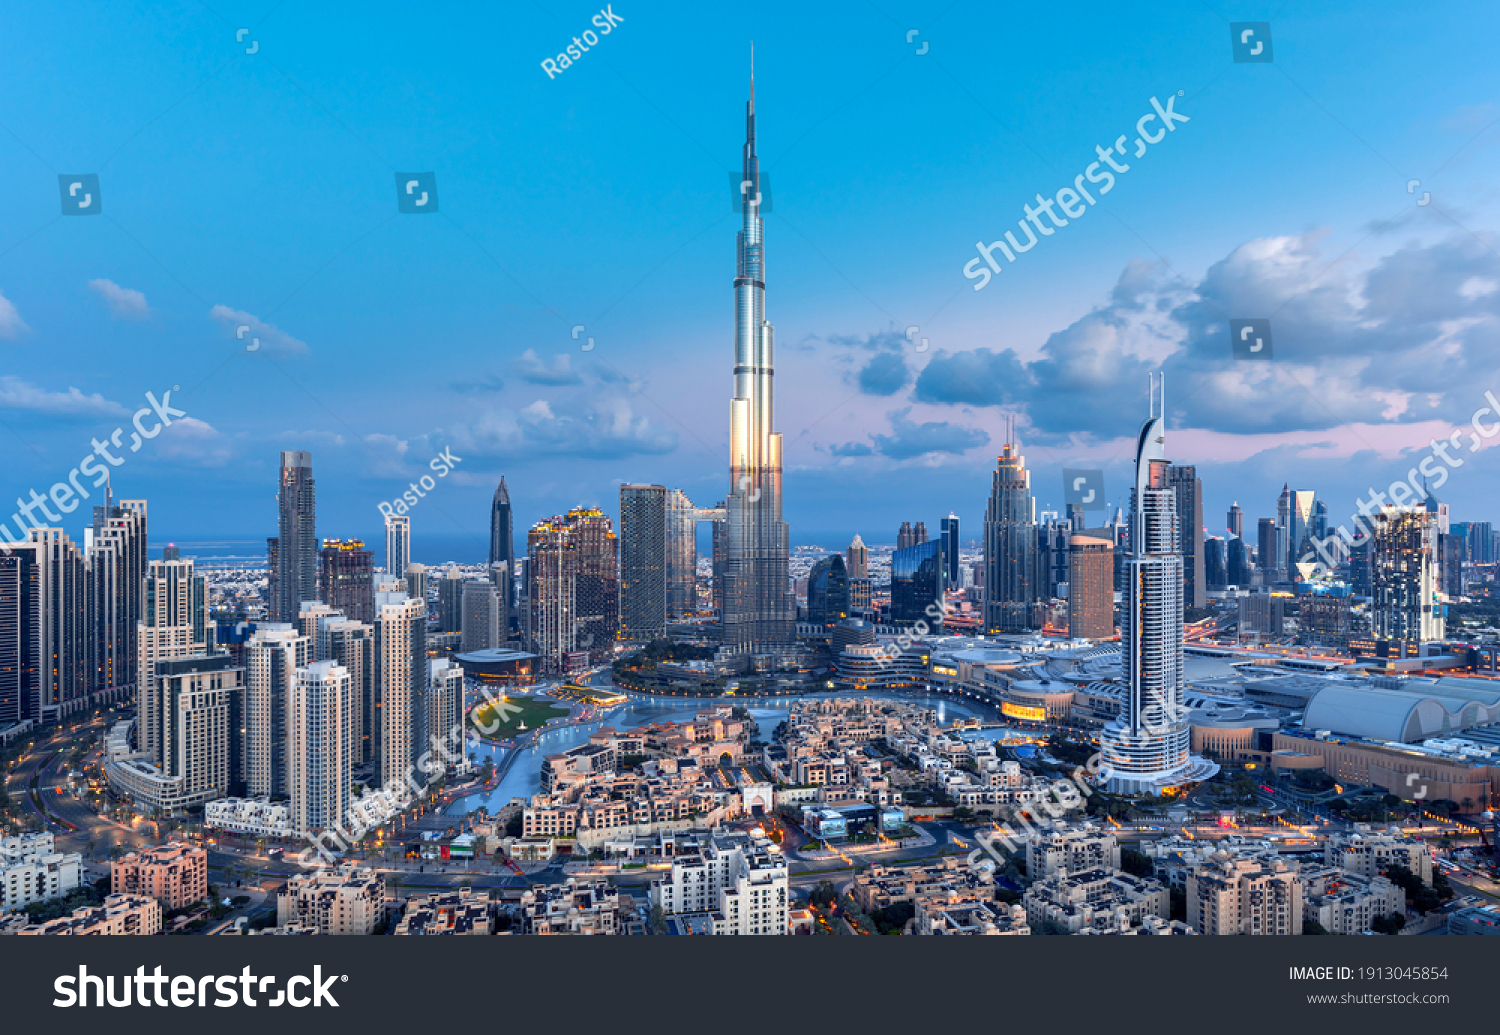 Dubai - amazing city center skyline with luxury skyscrapers at sunrise, United Arab Emirates #1913045854